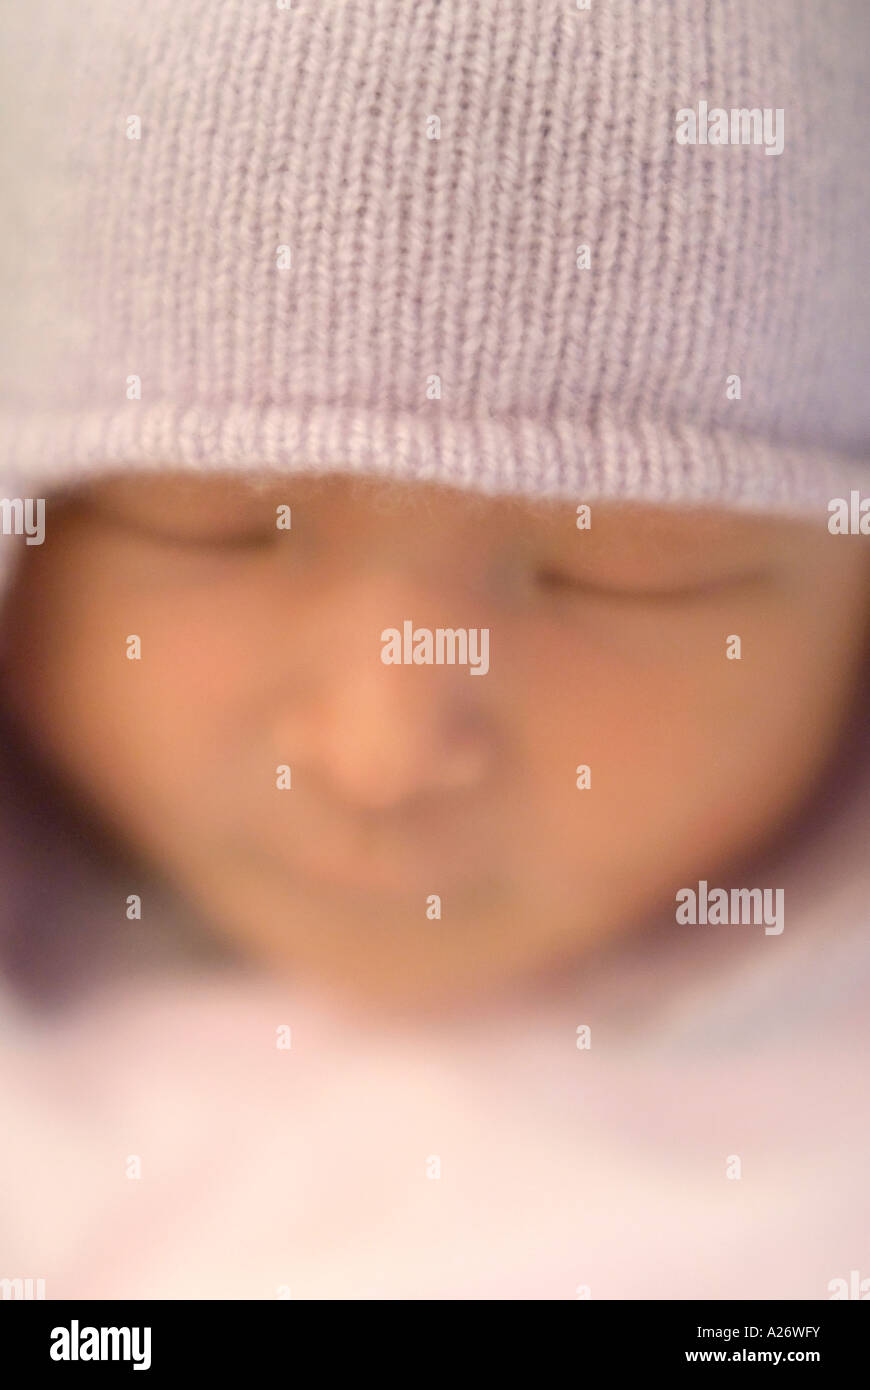 Visage de bébé nouveau-né avec bonnet 3 jours Sleepy éclat rayonnant avec soft focus intentionnellement Banque D'Images